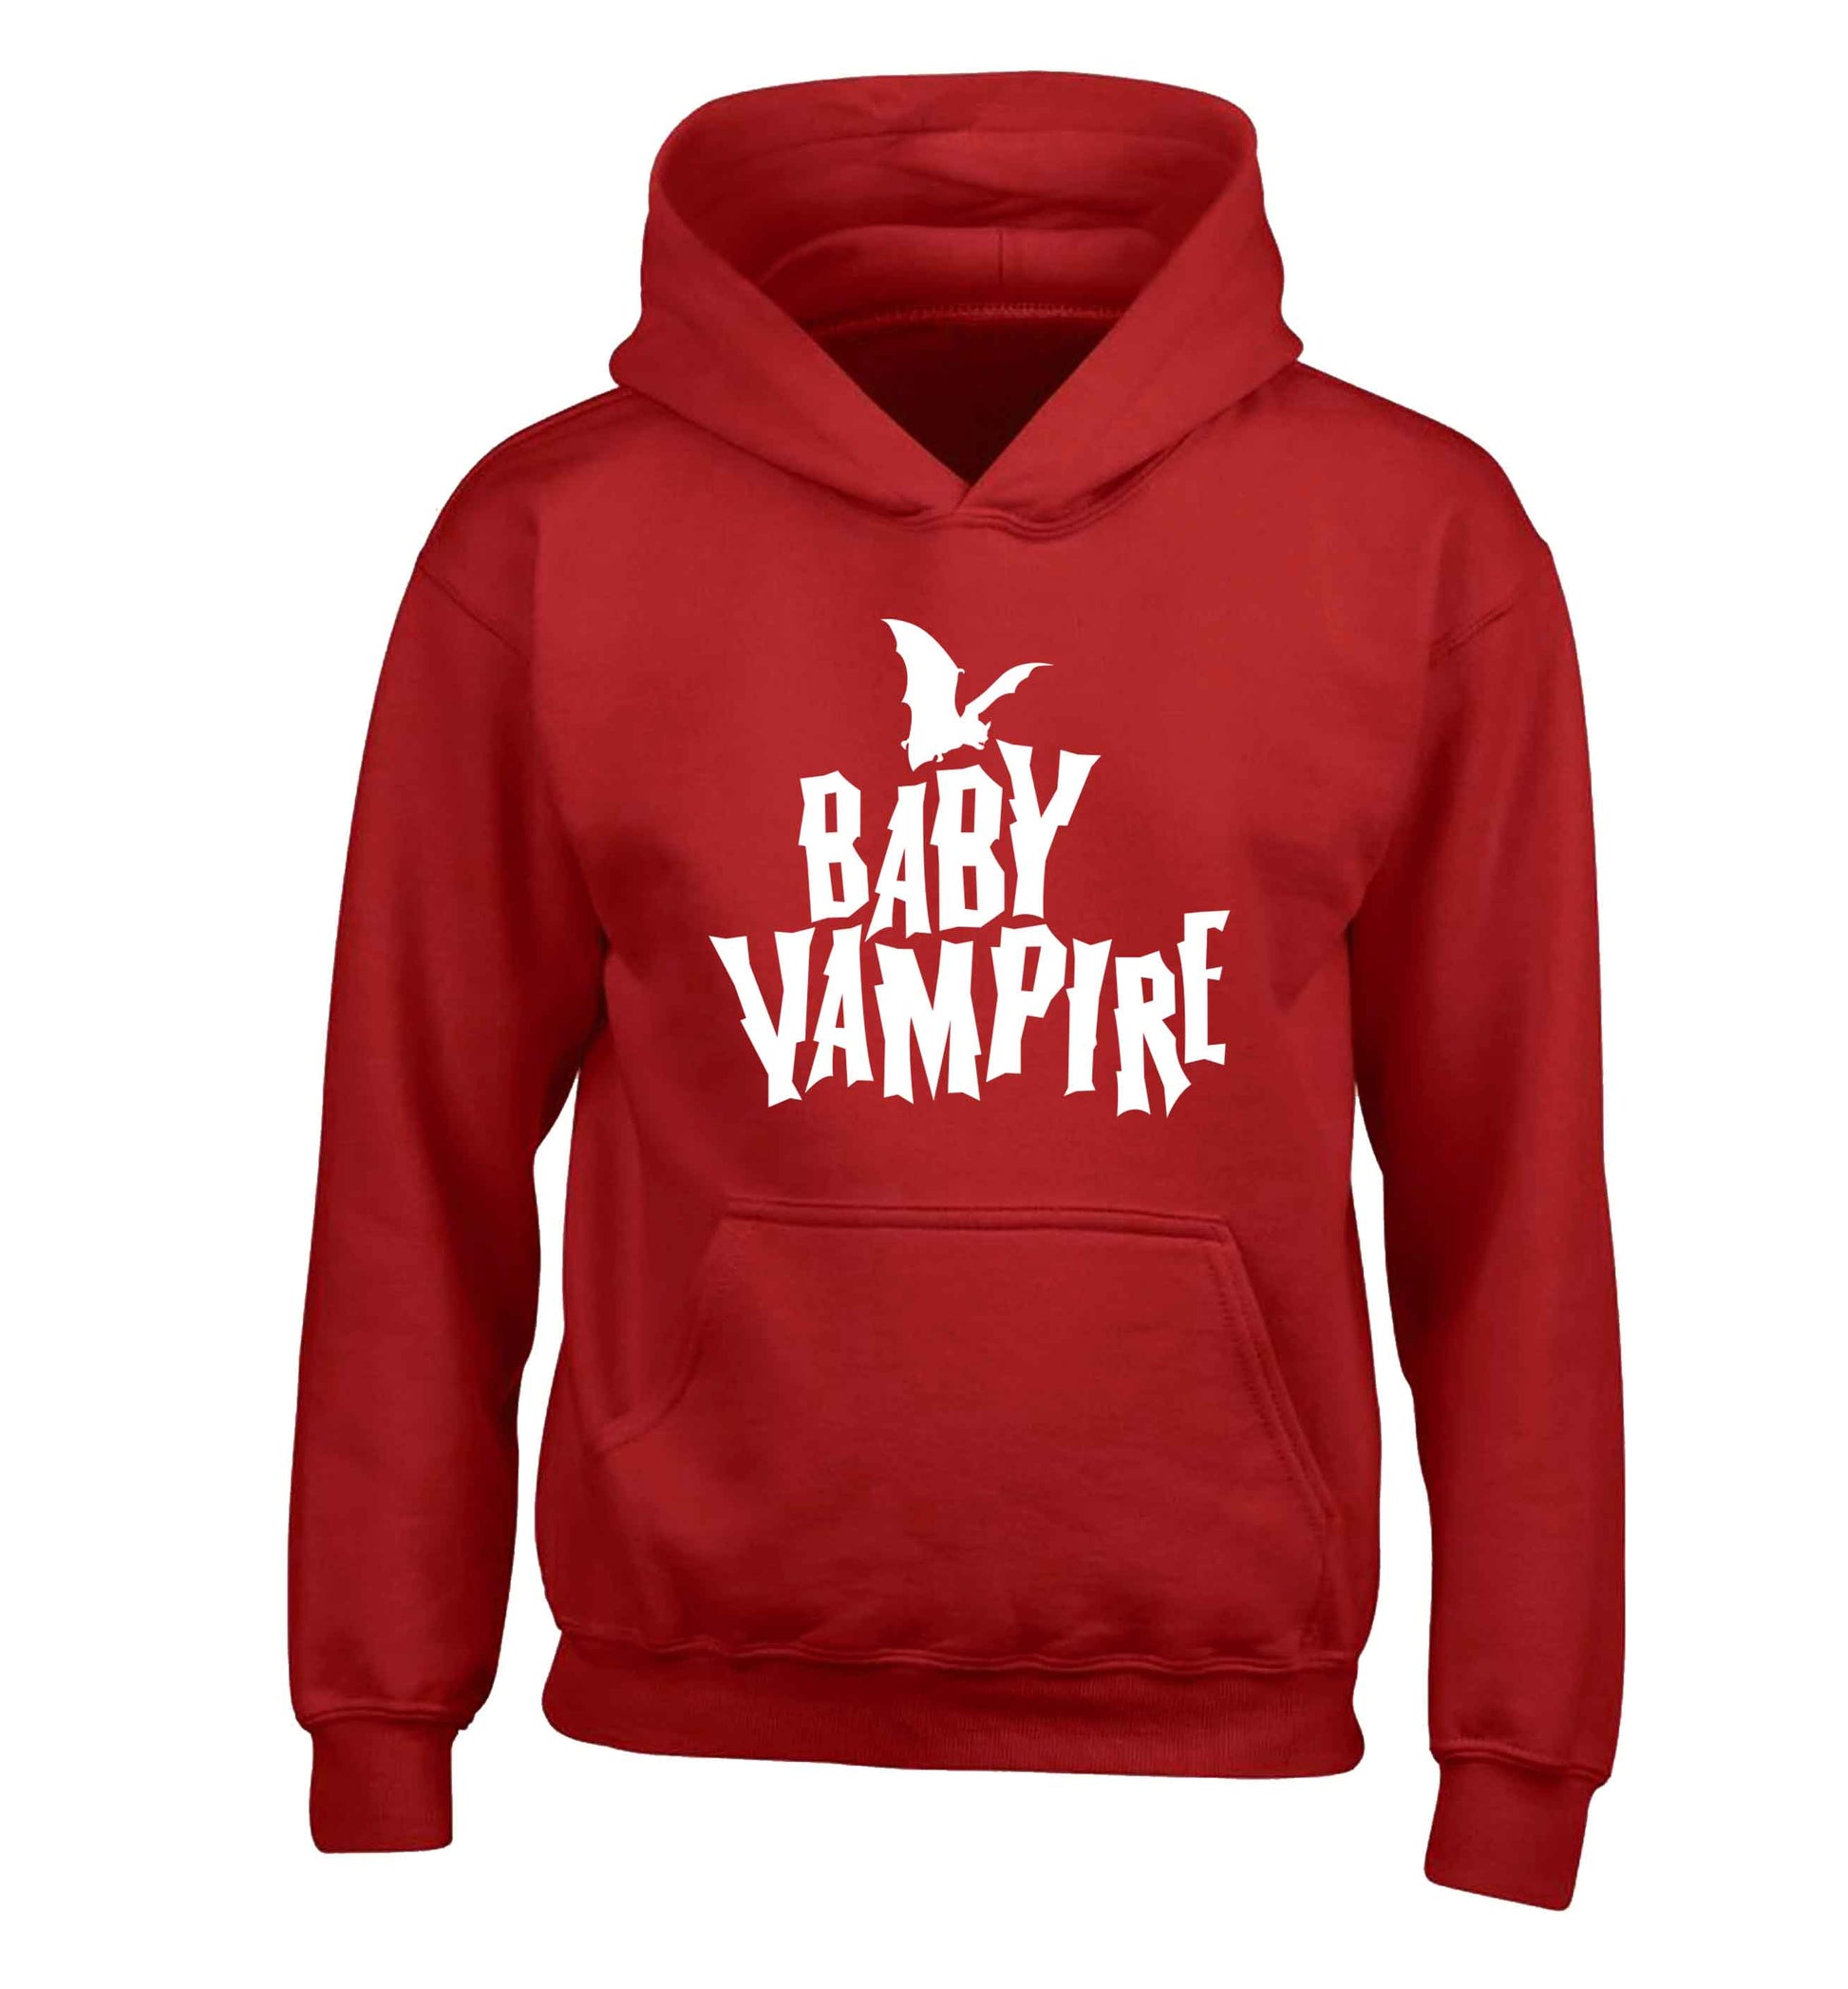 Baby vampire children's red hoodie 12-13 Years